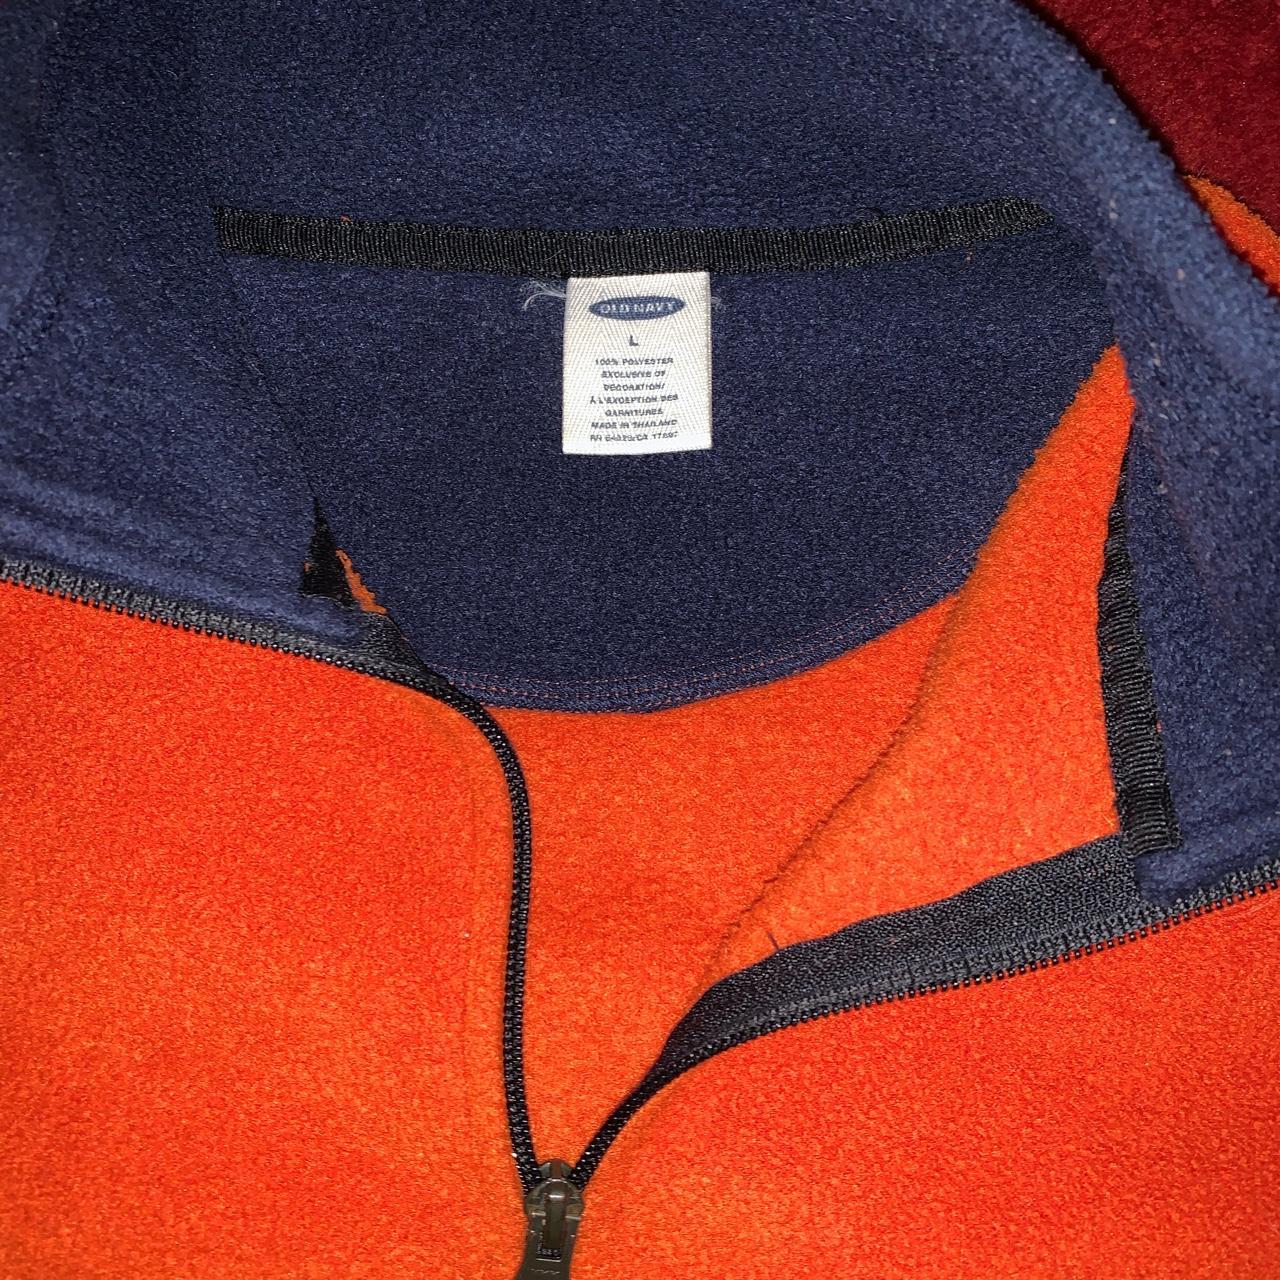 Old Navy Men's Orange and Navy Sweatshirt | Depop